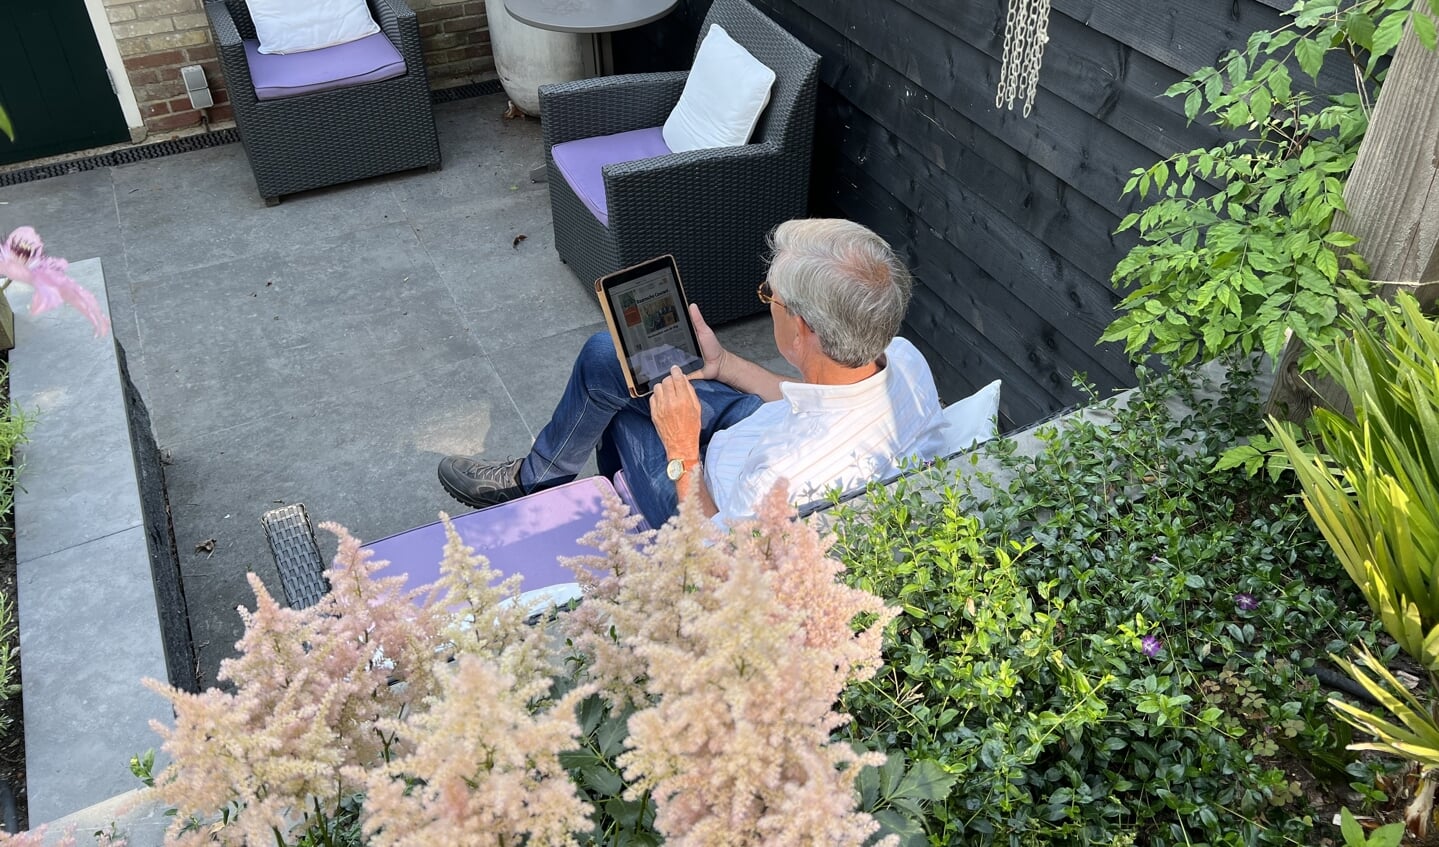 Pieter Schut leest de krant op zijn tablet in de tuin. 